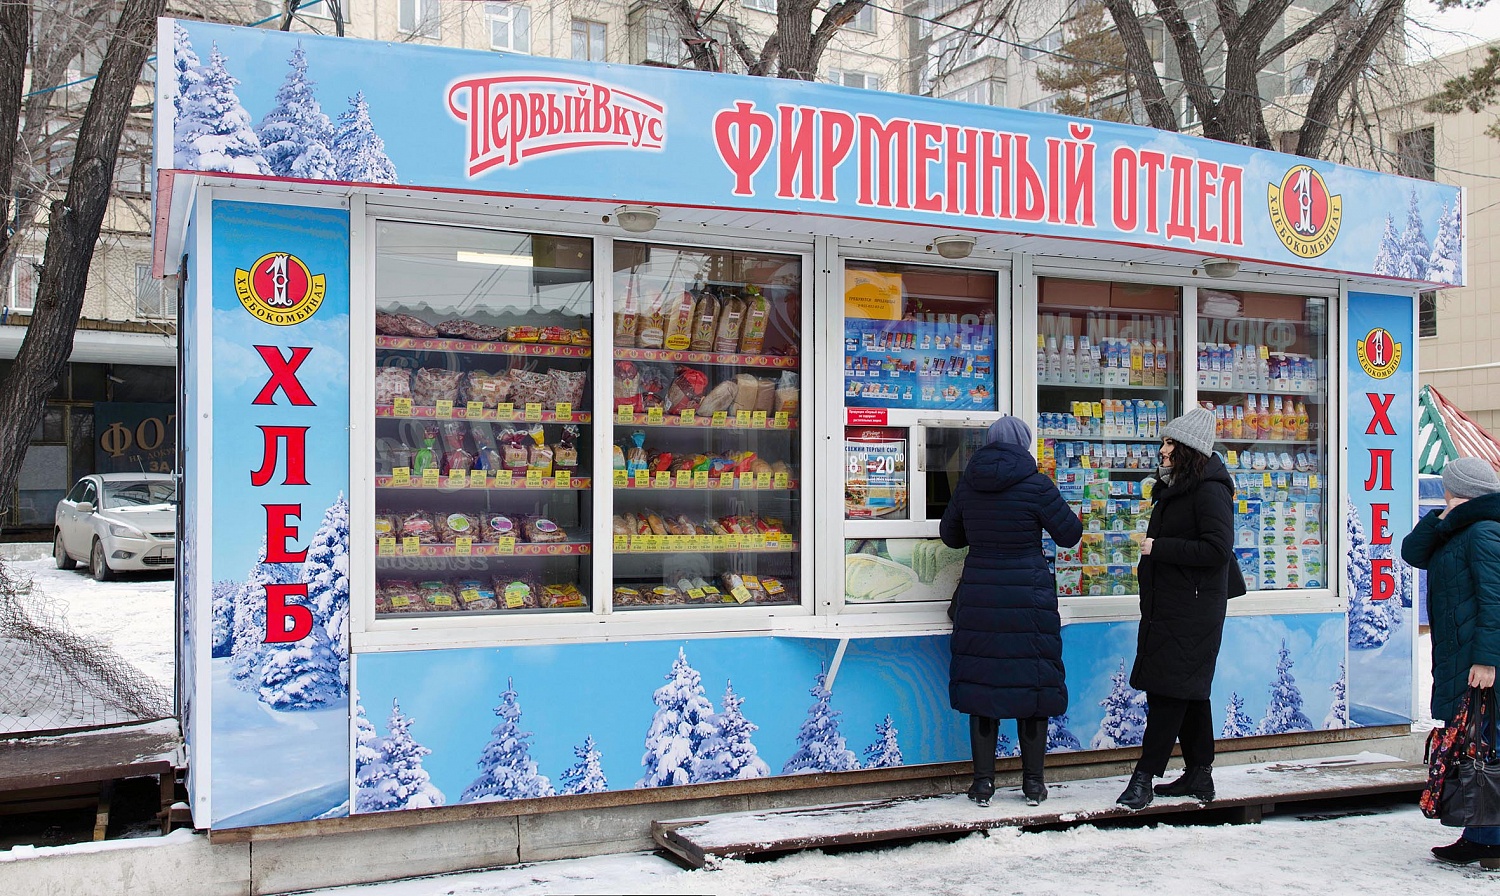 Оформление торгового павильона для сети магазинов Первый вкус, г. Челябинск